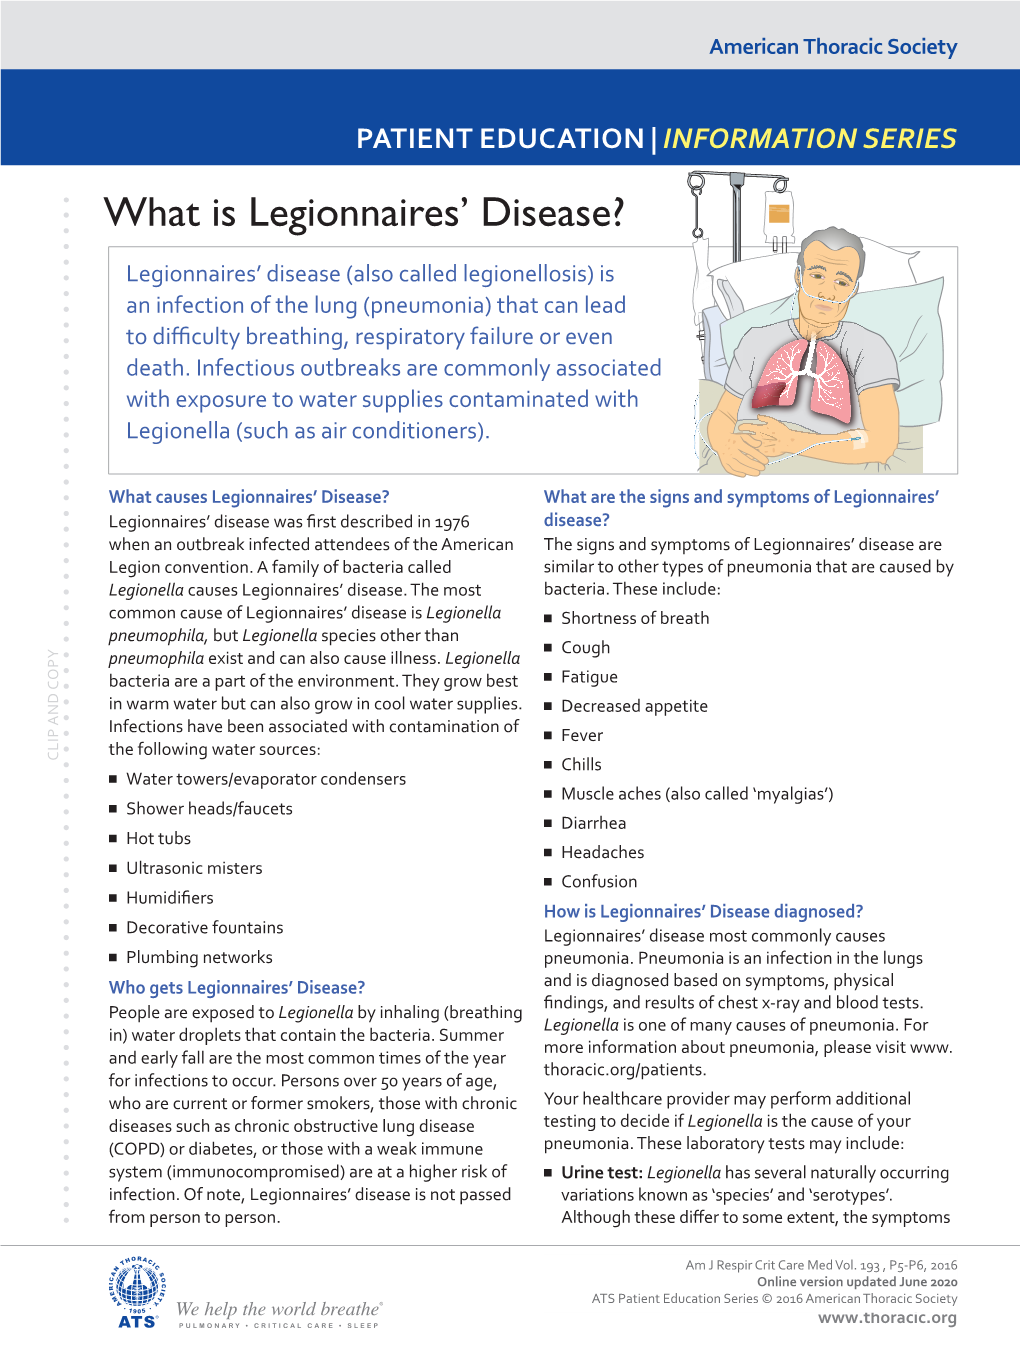 What Is Legionnaires' Disease?